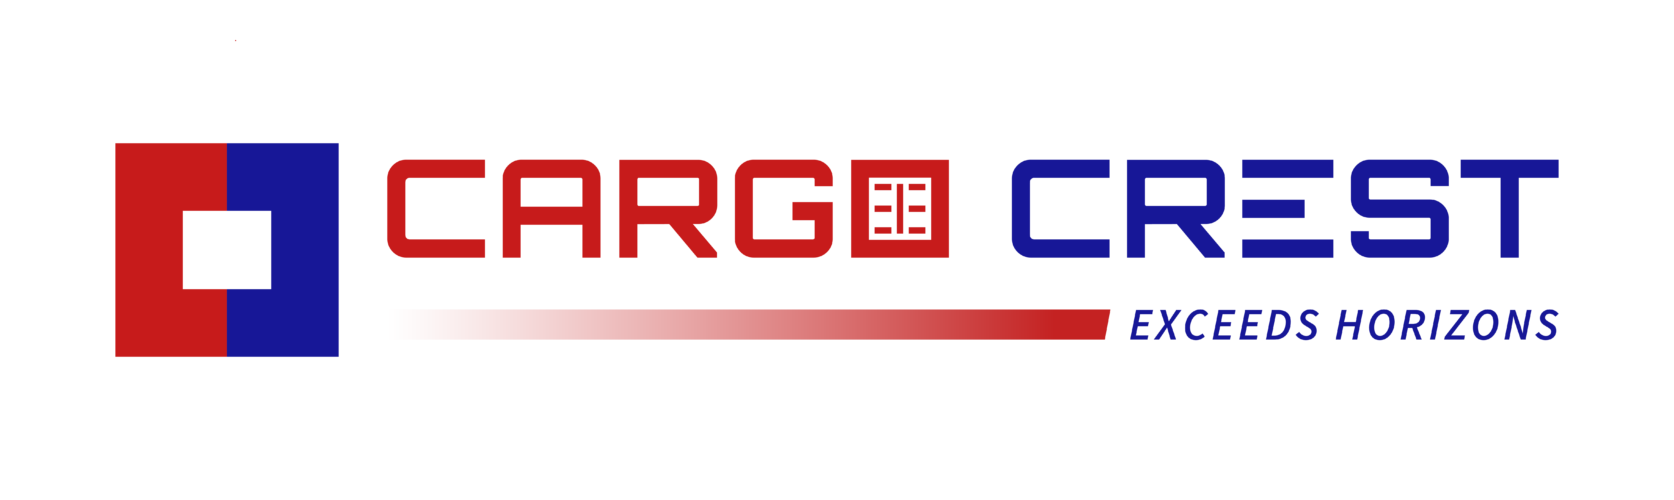 Cargo Crest